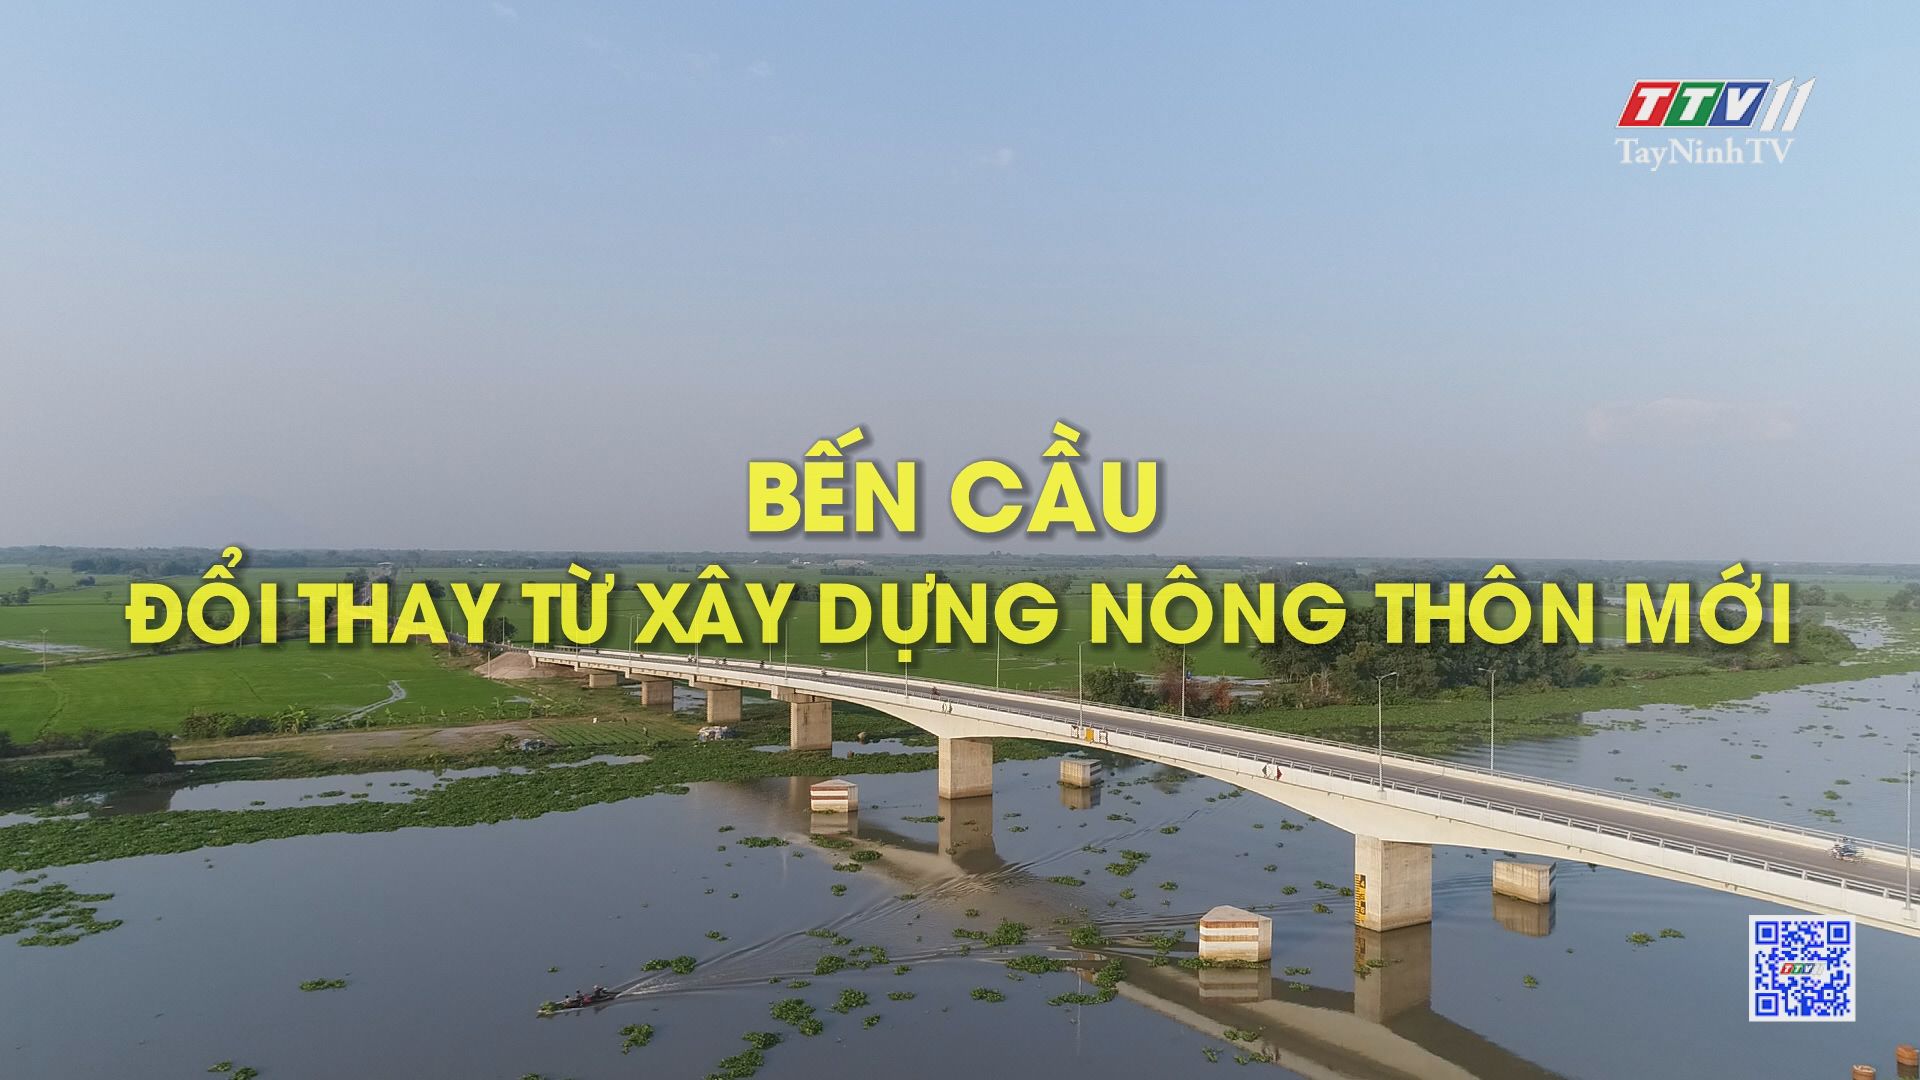 Bến Cầu đổi thay từ xây dựng nông thôn mới | ĐẠI ĐOÀN KẾT TOÀN DÂN | TayNinhTV